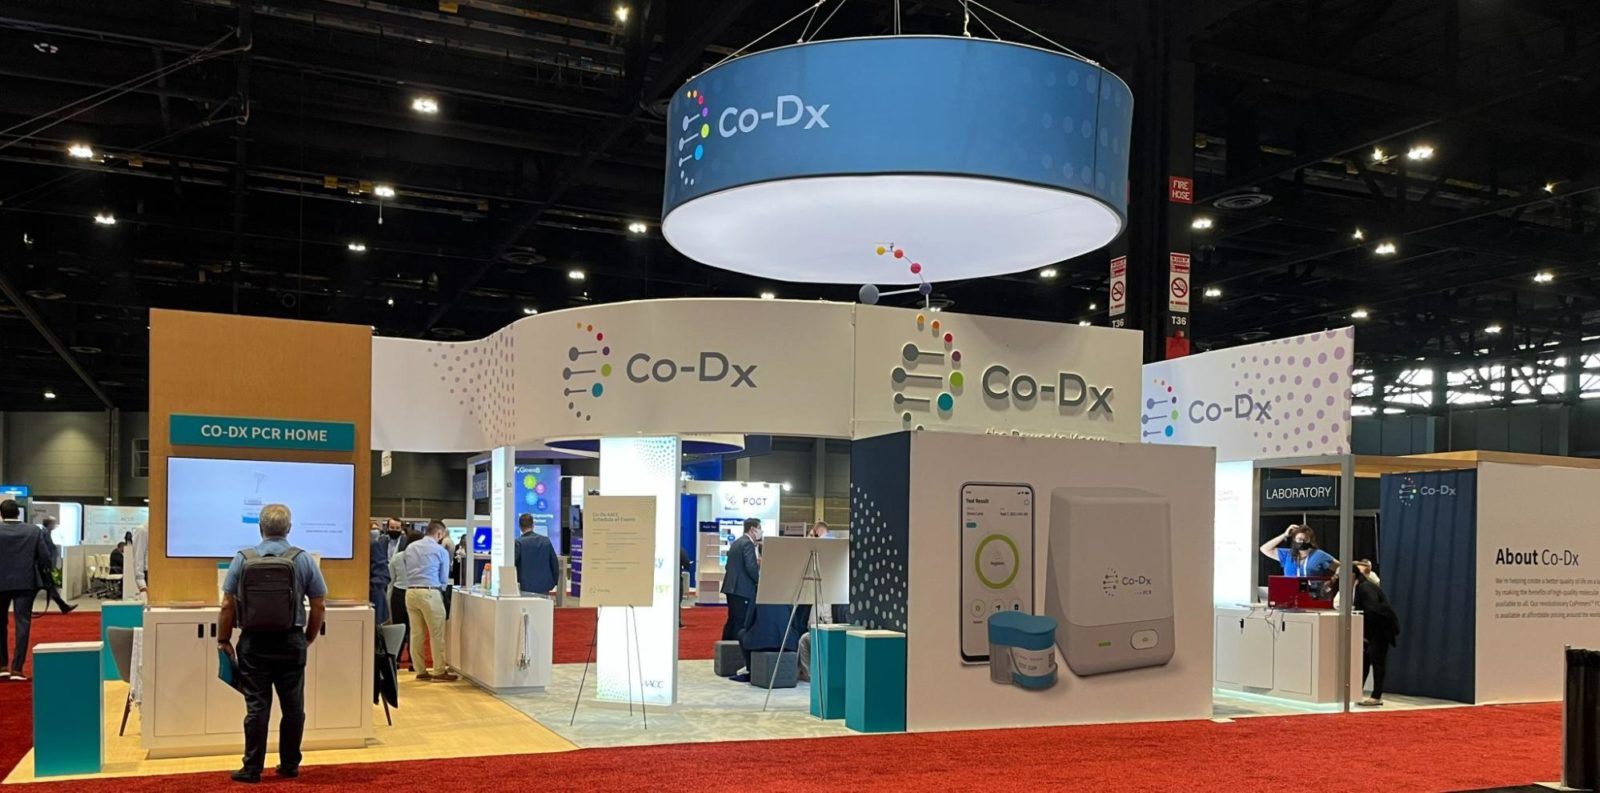 Co-Dx's exhibit